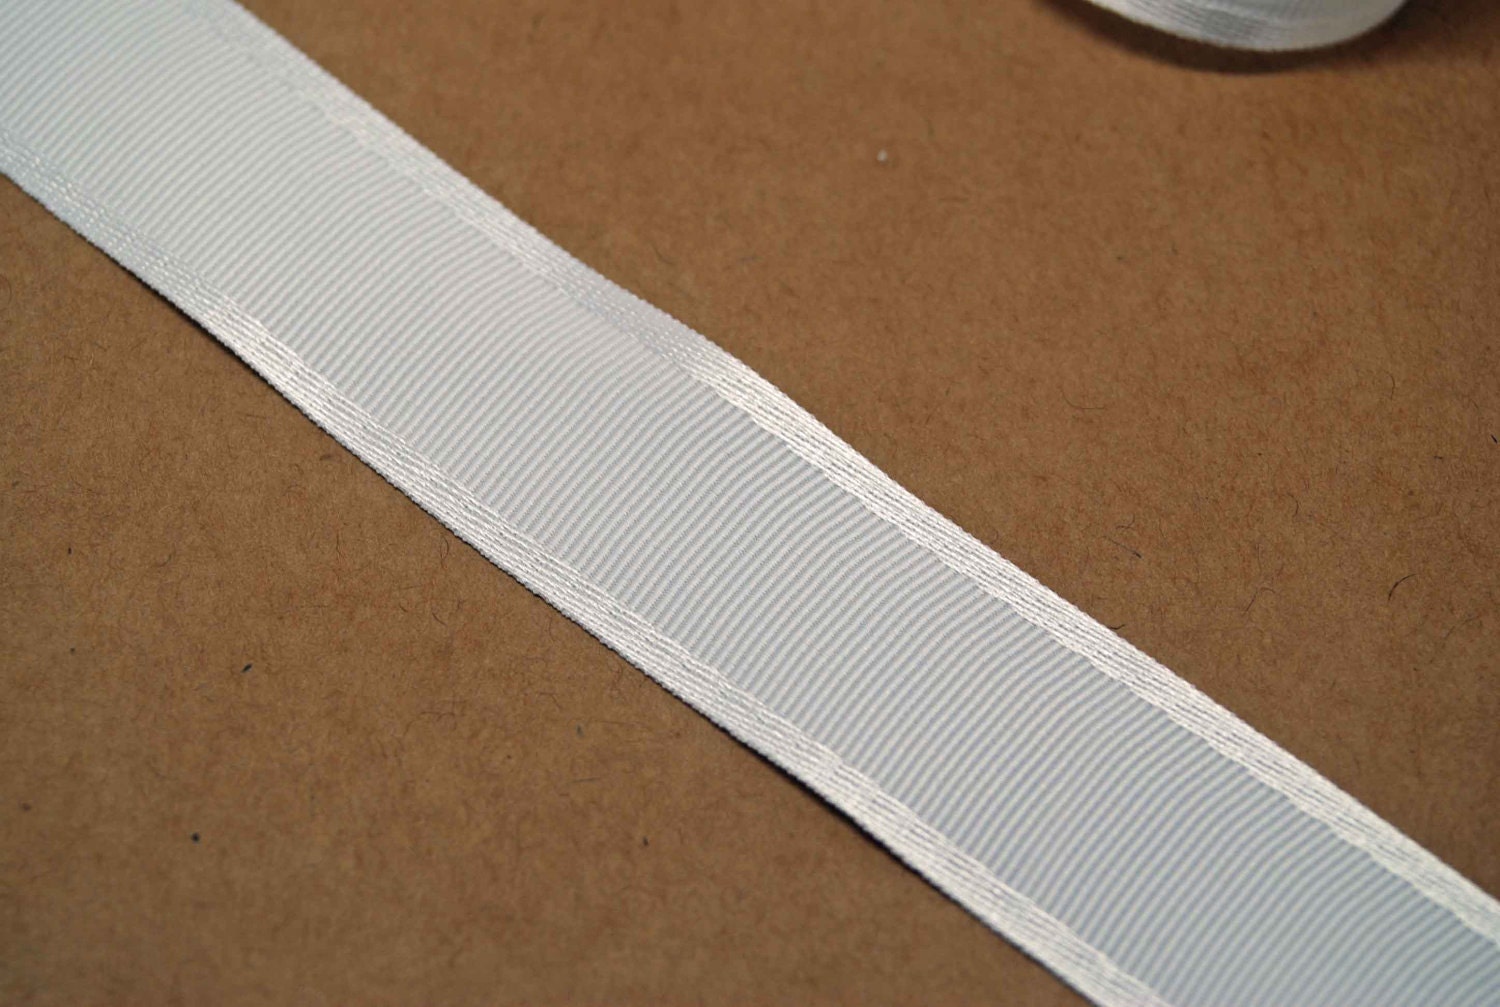 Grosgrain Ribbon with Stitched Edge - White - 1 - Stonemountain